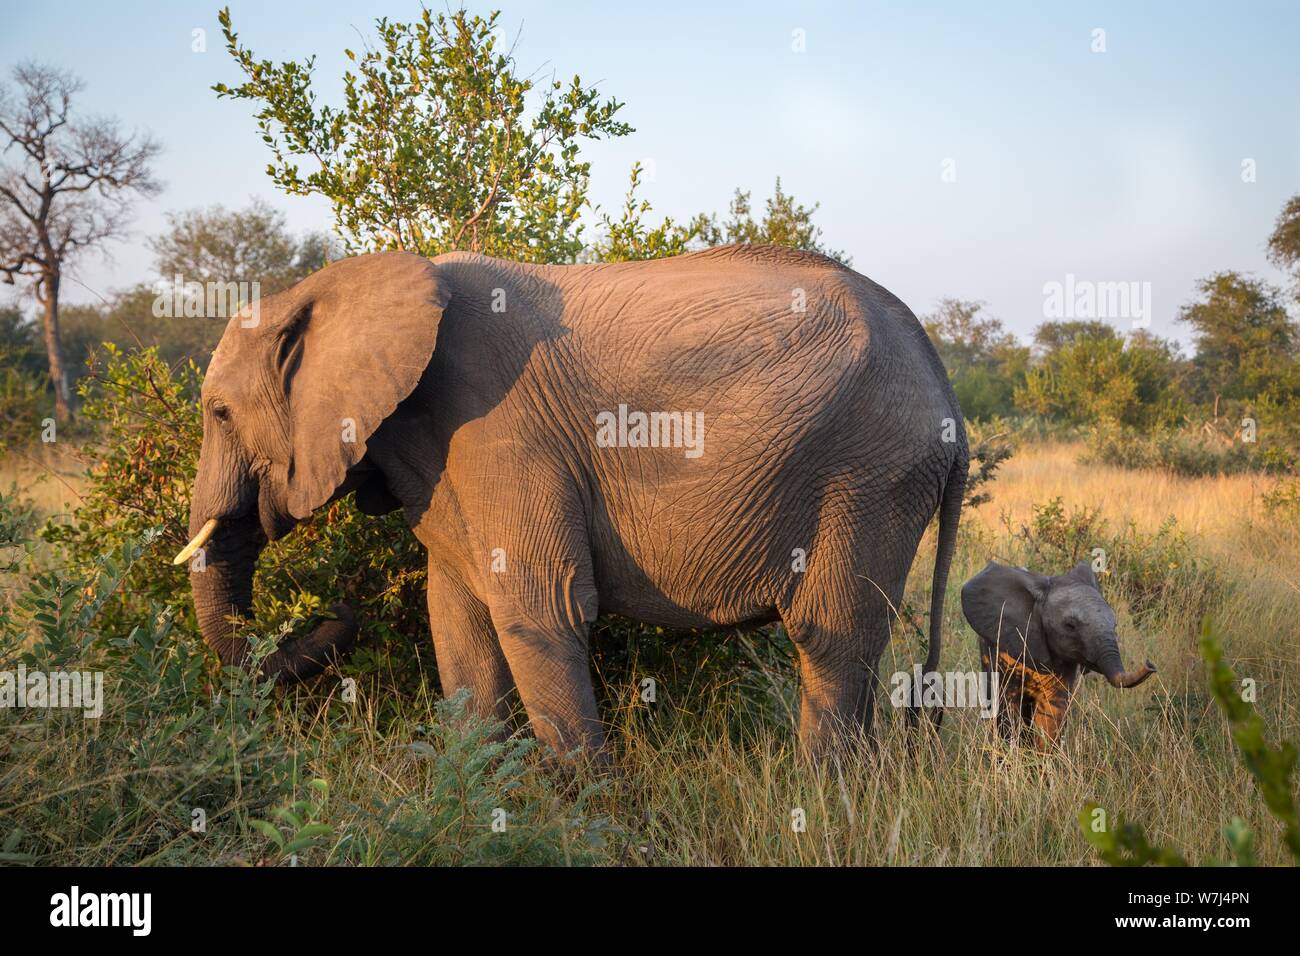 Les éléphants d'Afrique (Loxodonta africana), bébé éléphant derrière mère en brousse, Klaserie Nature Reserve, Afrique du Sud Banque D'Images